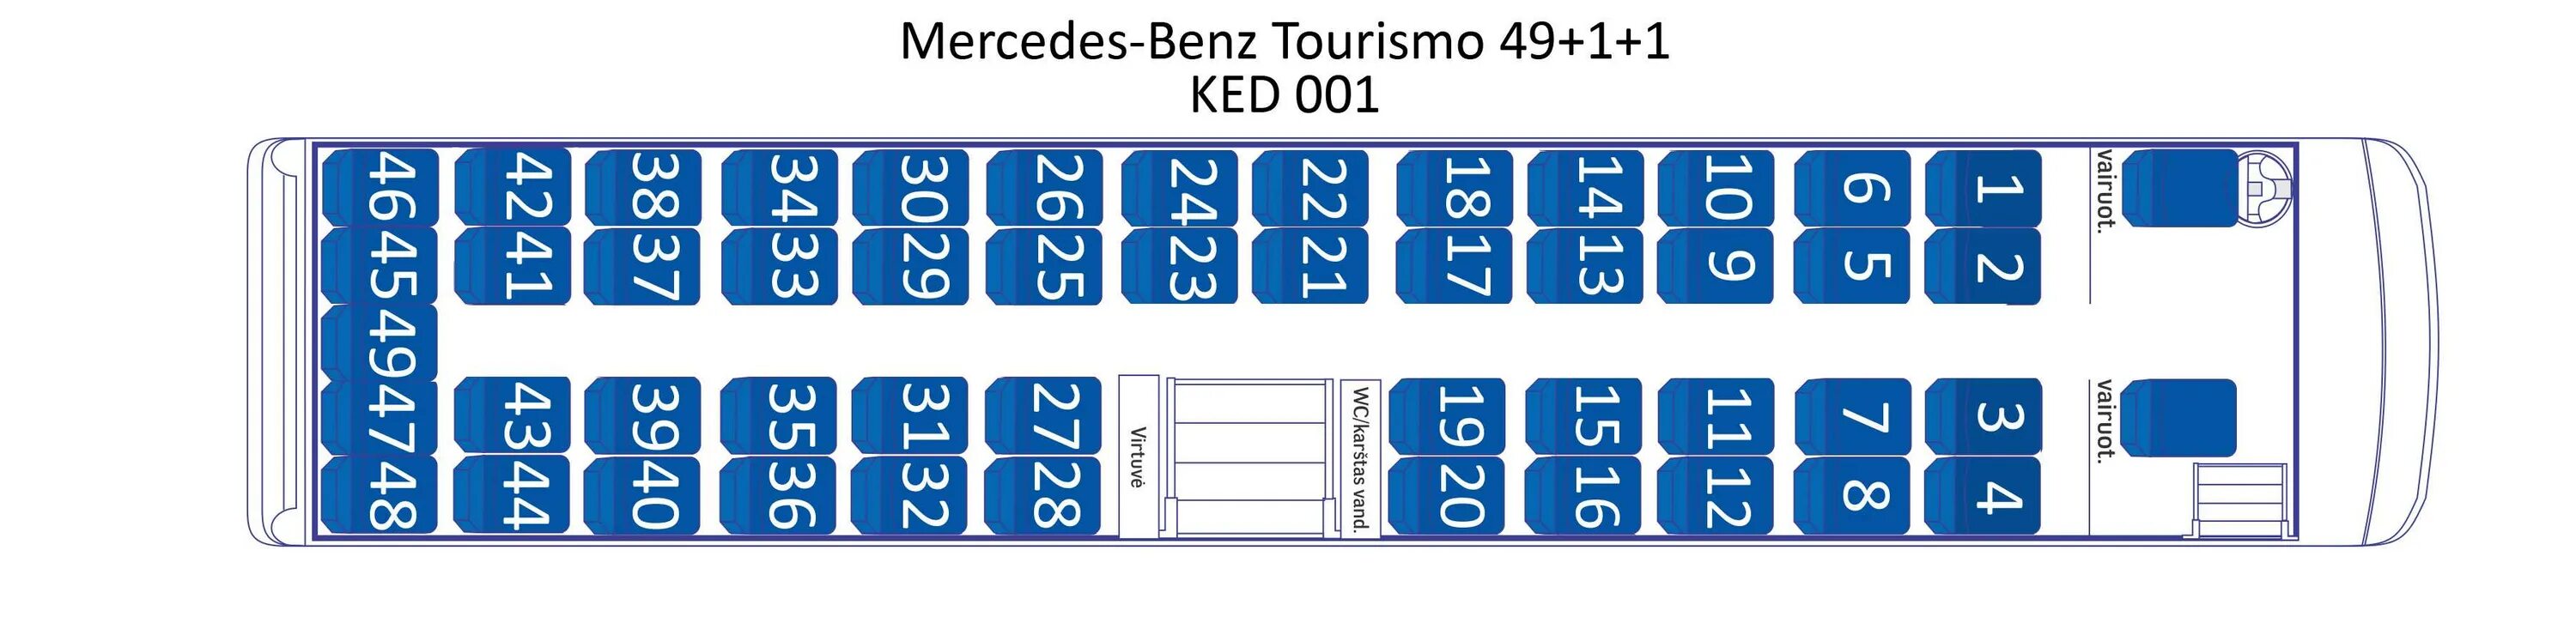 Схема автобуса Мерседес на 49 мест. Расположение мест в автобусе Мерседес 51 место. Хундай 43 места расположение мест. Схема мест в автобусе Мерседес дальнего следования. Расположение автобуса 49